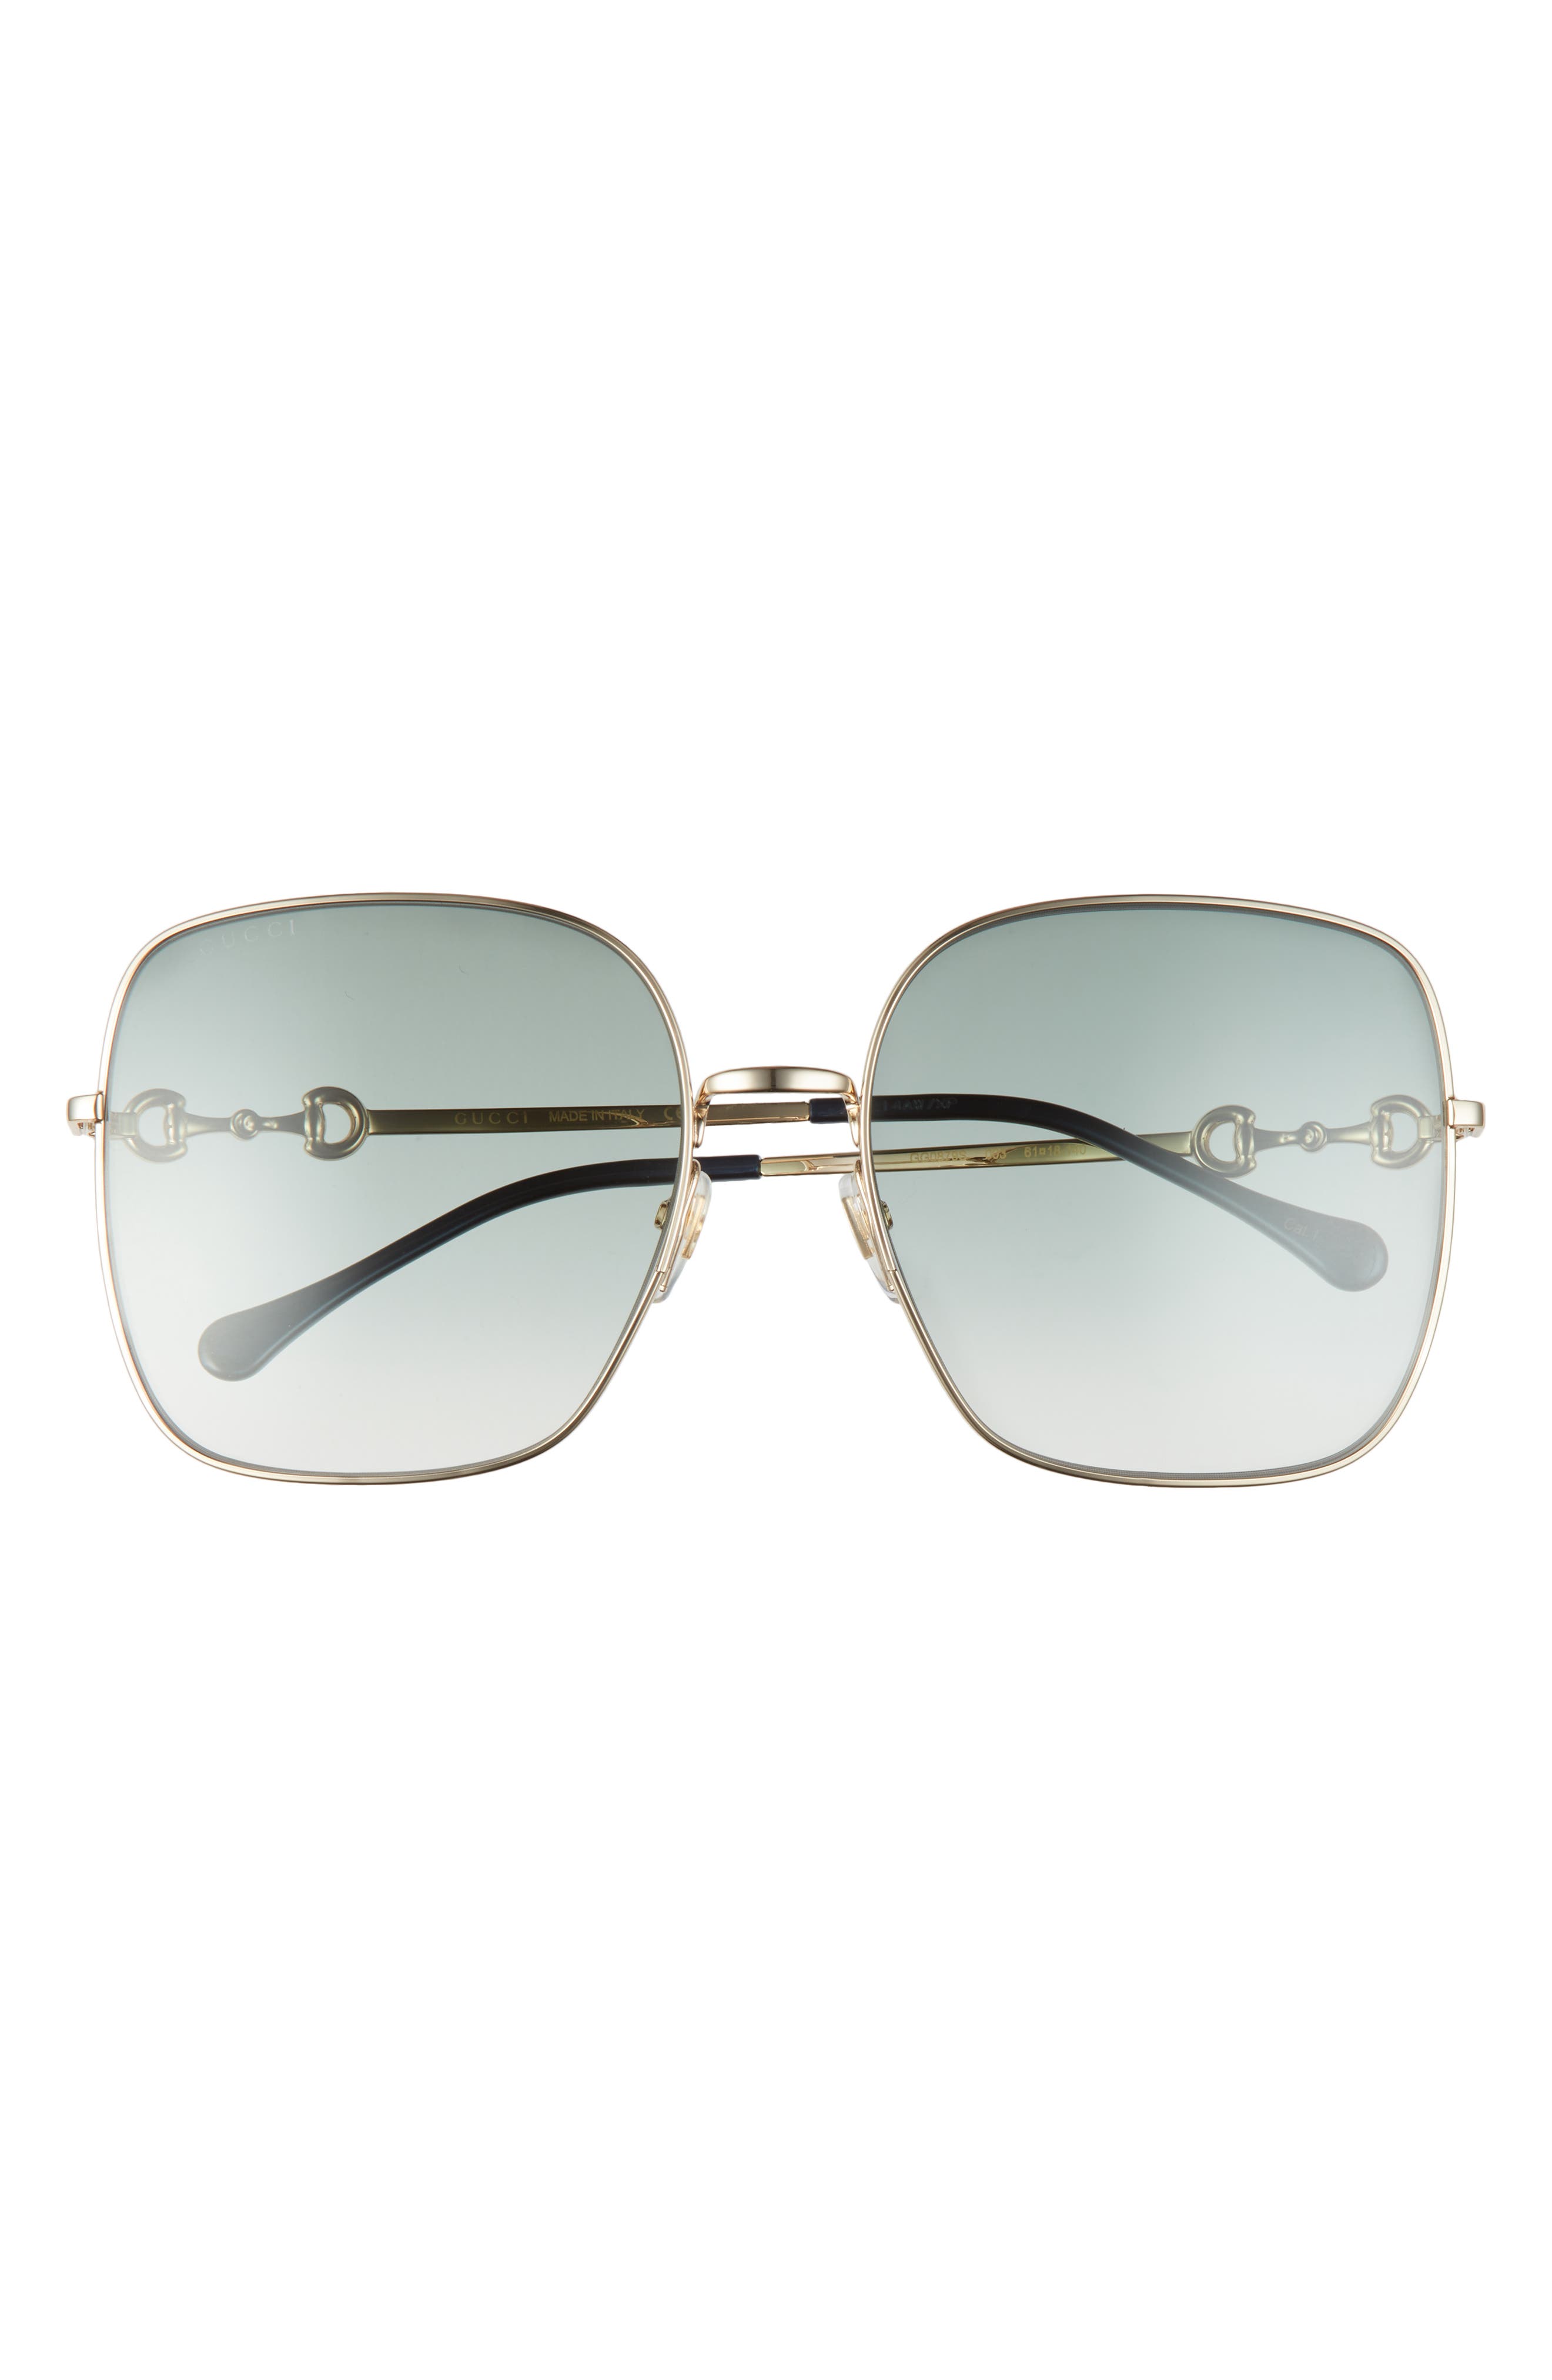 gucci sunglasses women's square frame